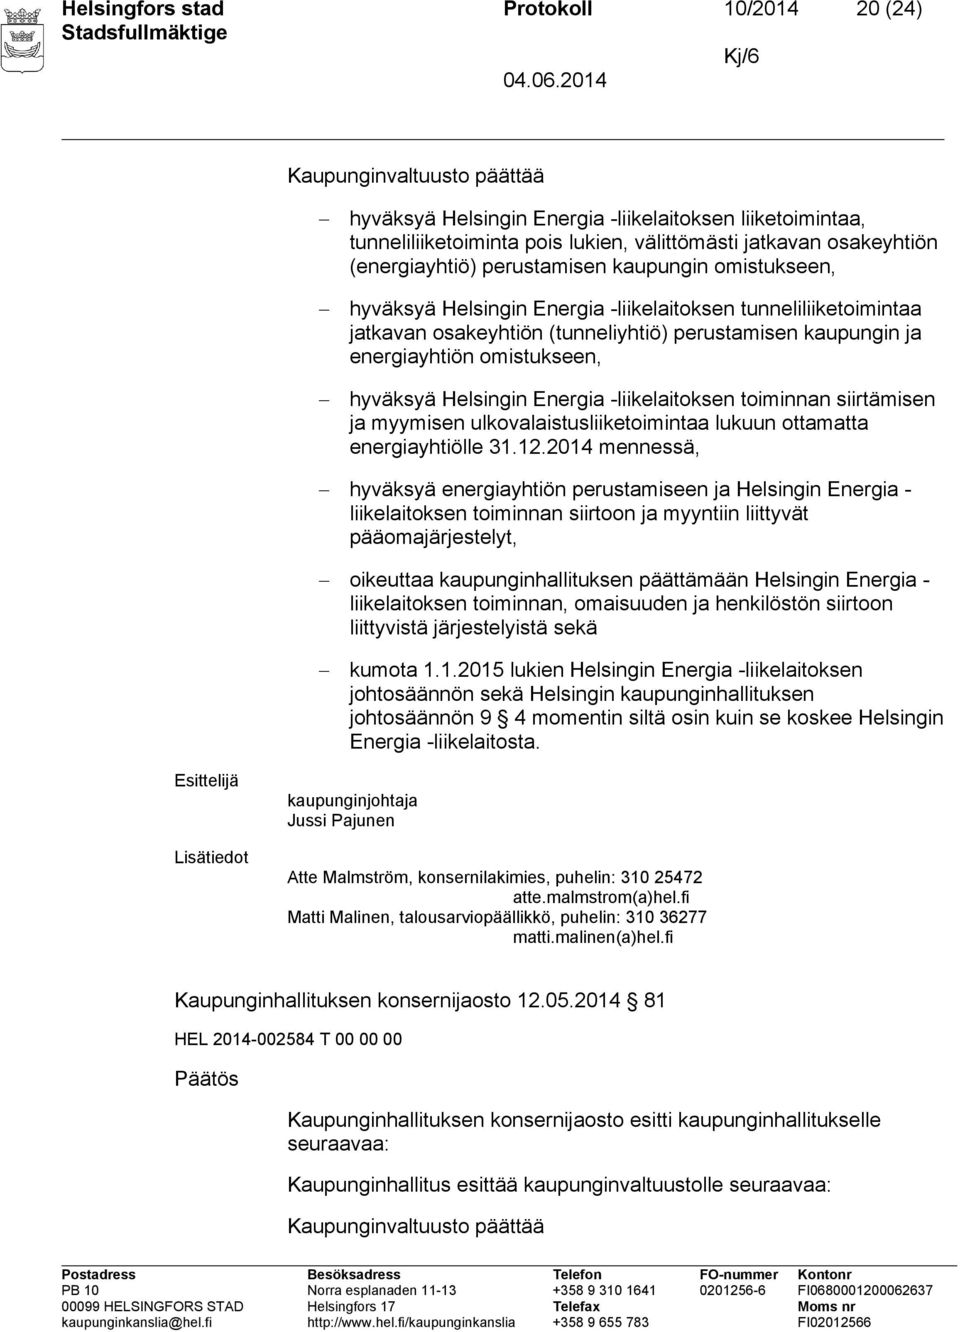 omistukseen, hyväksyä Helsingin Energia -liikelaitoksen toiminnan siirtämisen ja myymisen ulkovalaistusliiketoimintaa lukuun ottamatta energiayhtiölle 31.12.